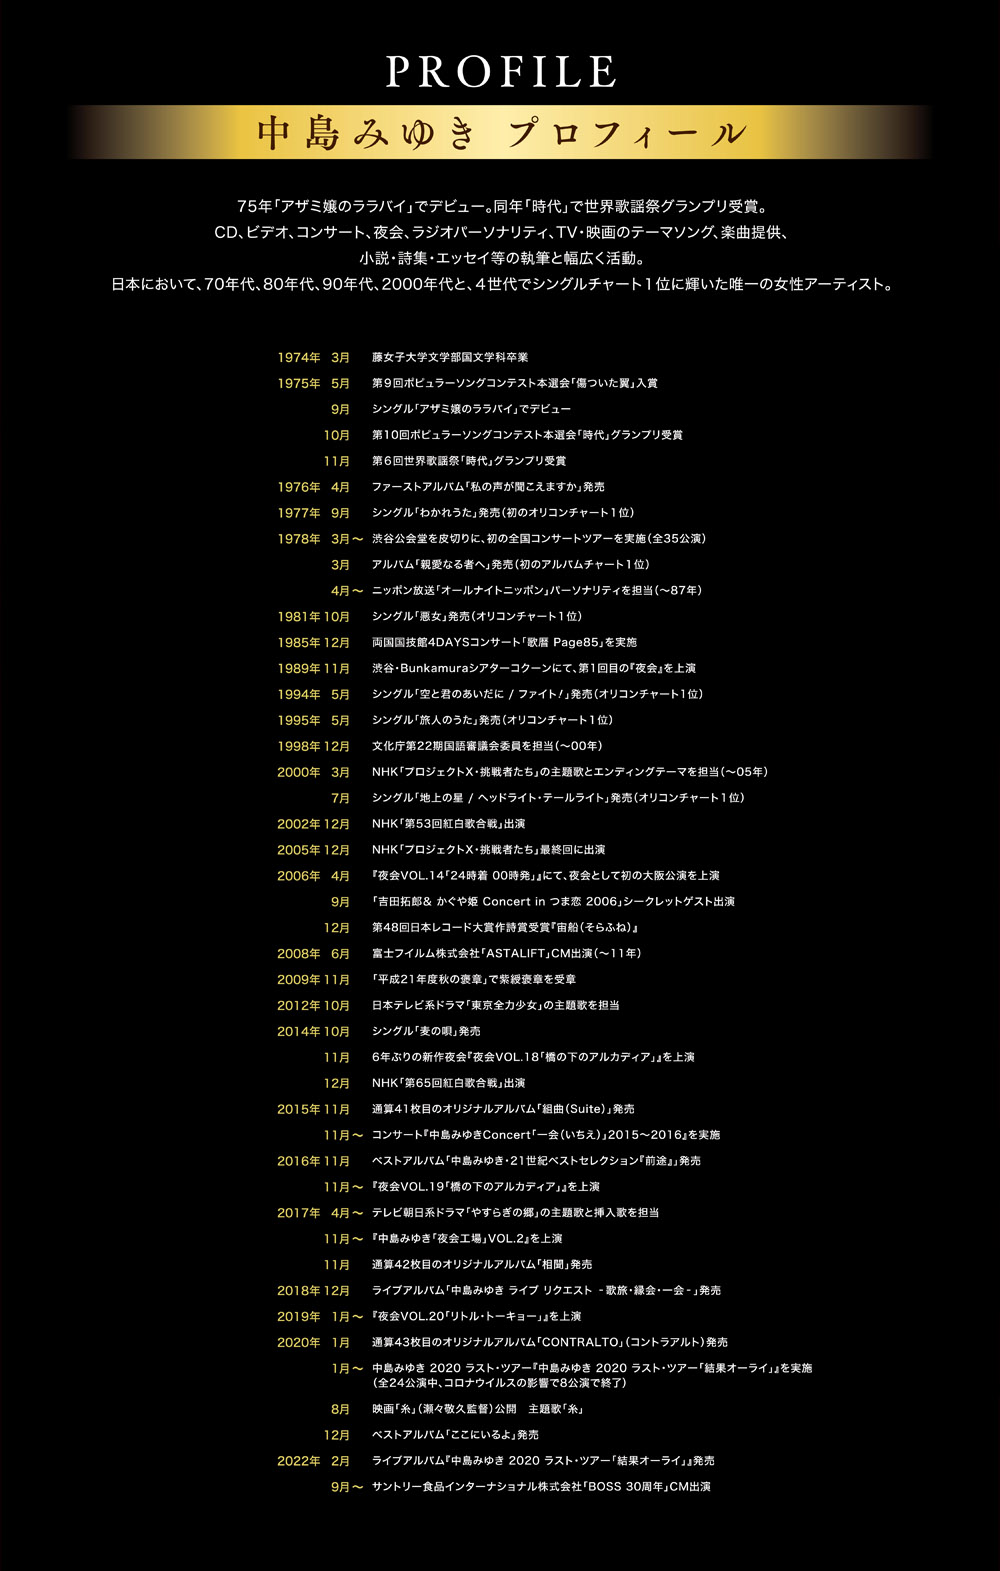 中島みゆき 夜会の軌跡 1989〜2002 劇場版 | 中島みゆき プロフィール